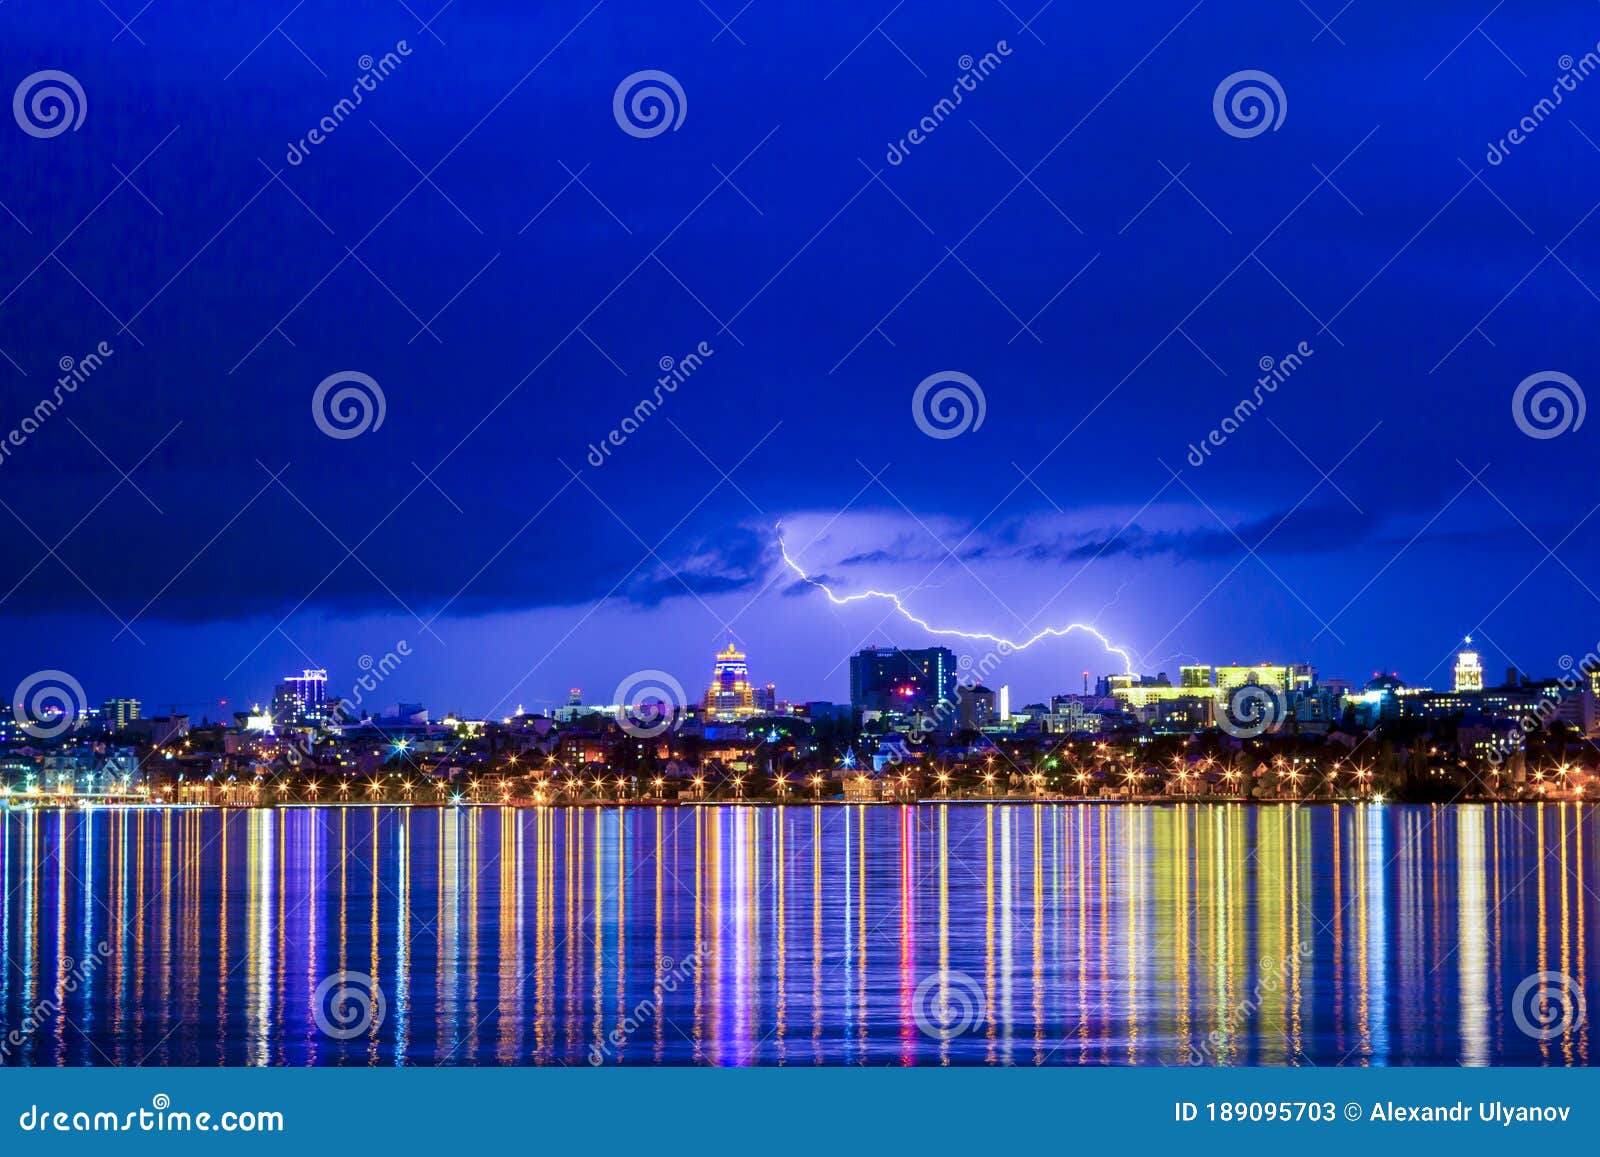 Stunning Multiple Lightning Strikes Over Voronezh City Stock Image